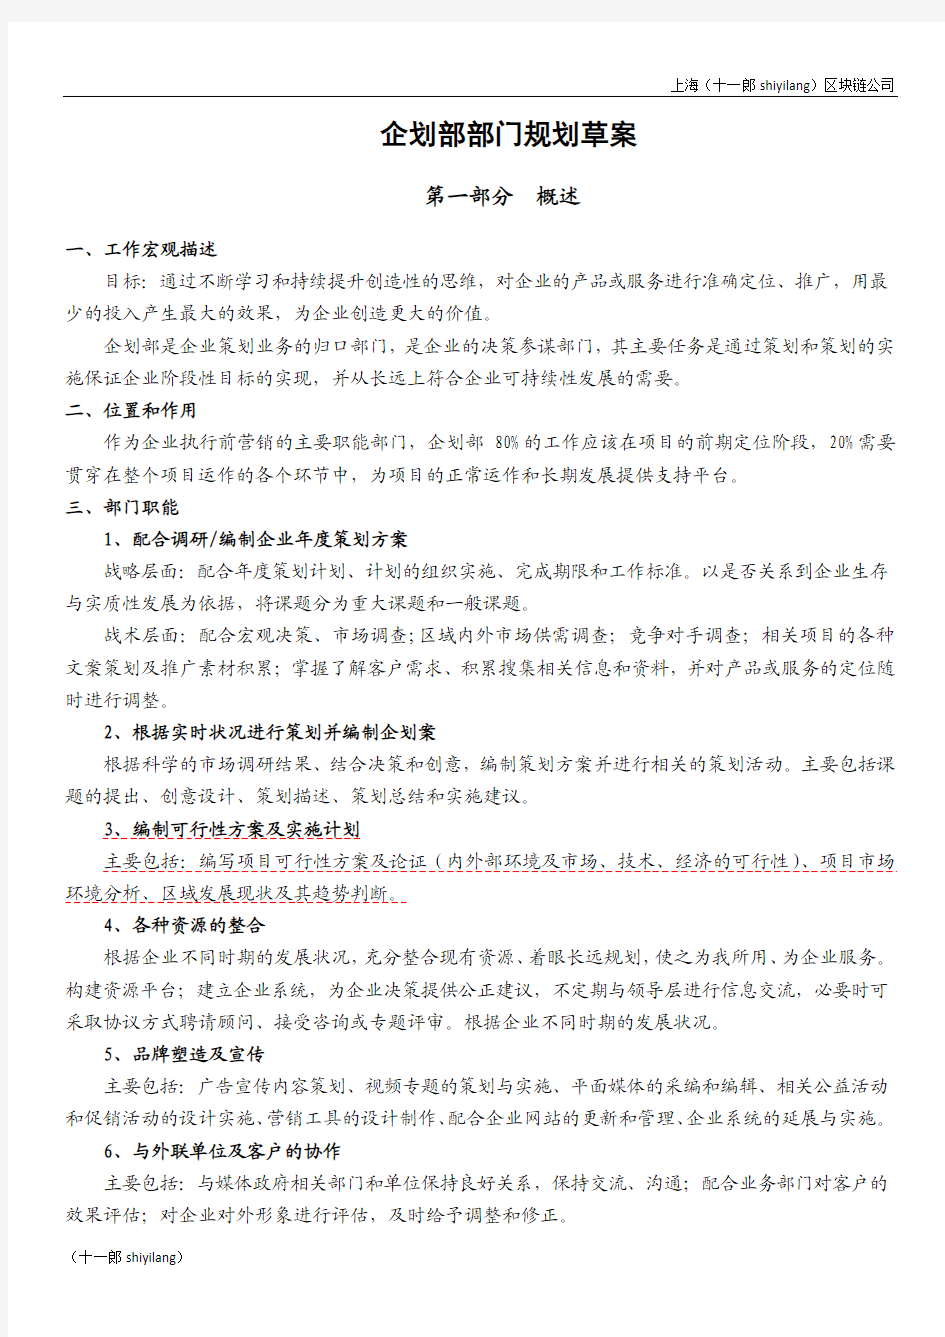 上海区块链公司企划部部门规划方案